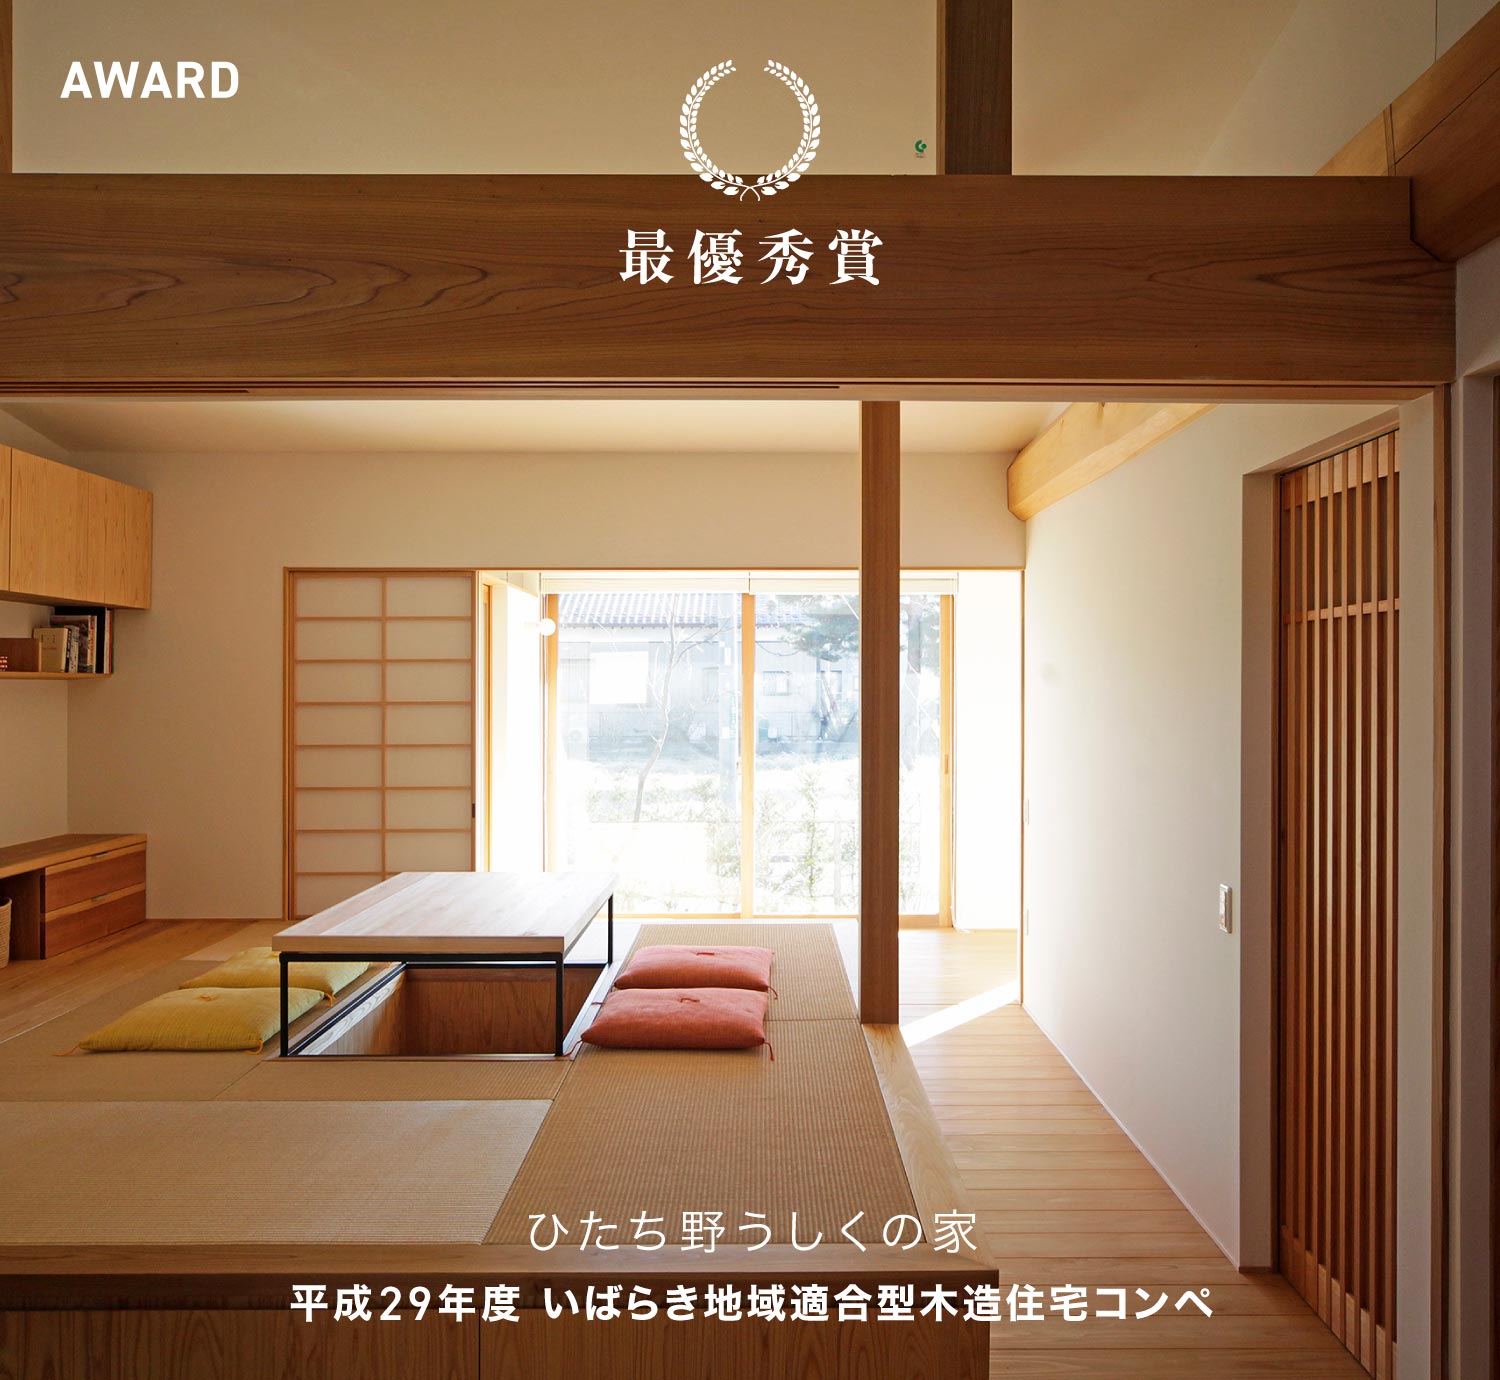 平成29年度 いばらき地域適合型木造住宅コンペ 最優秀賞